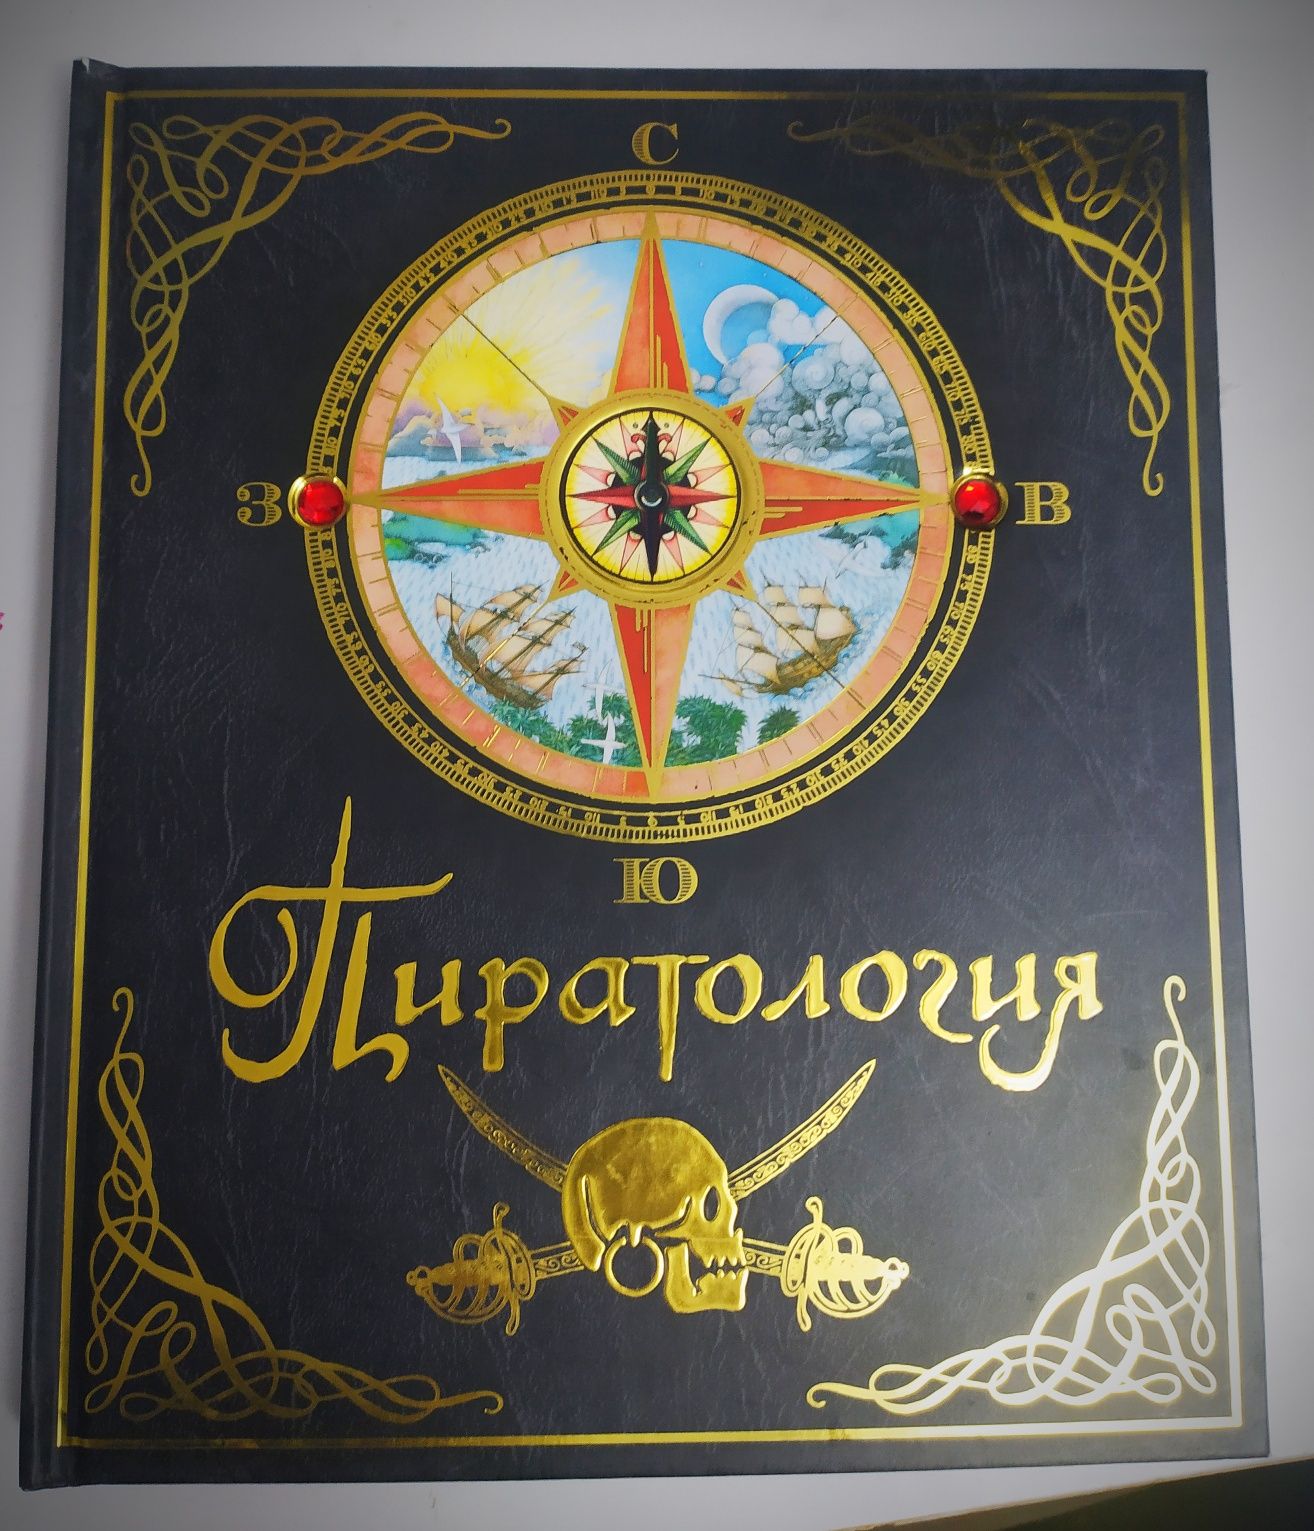 Пиратология "энциклопедия"